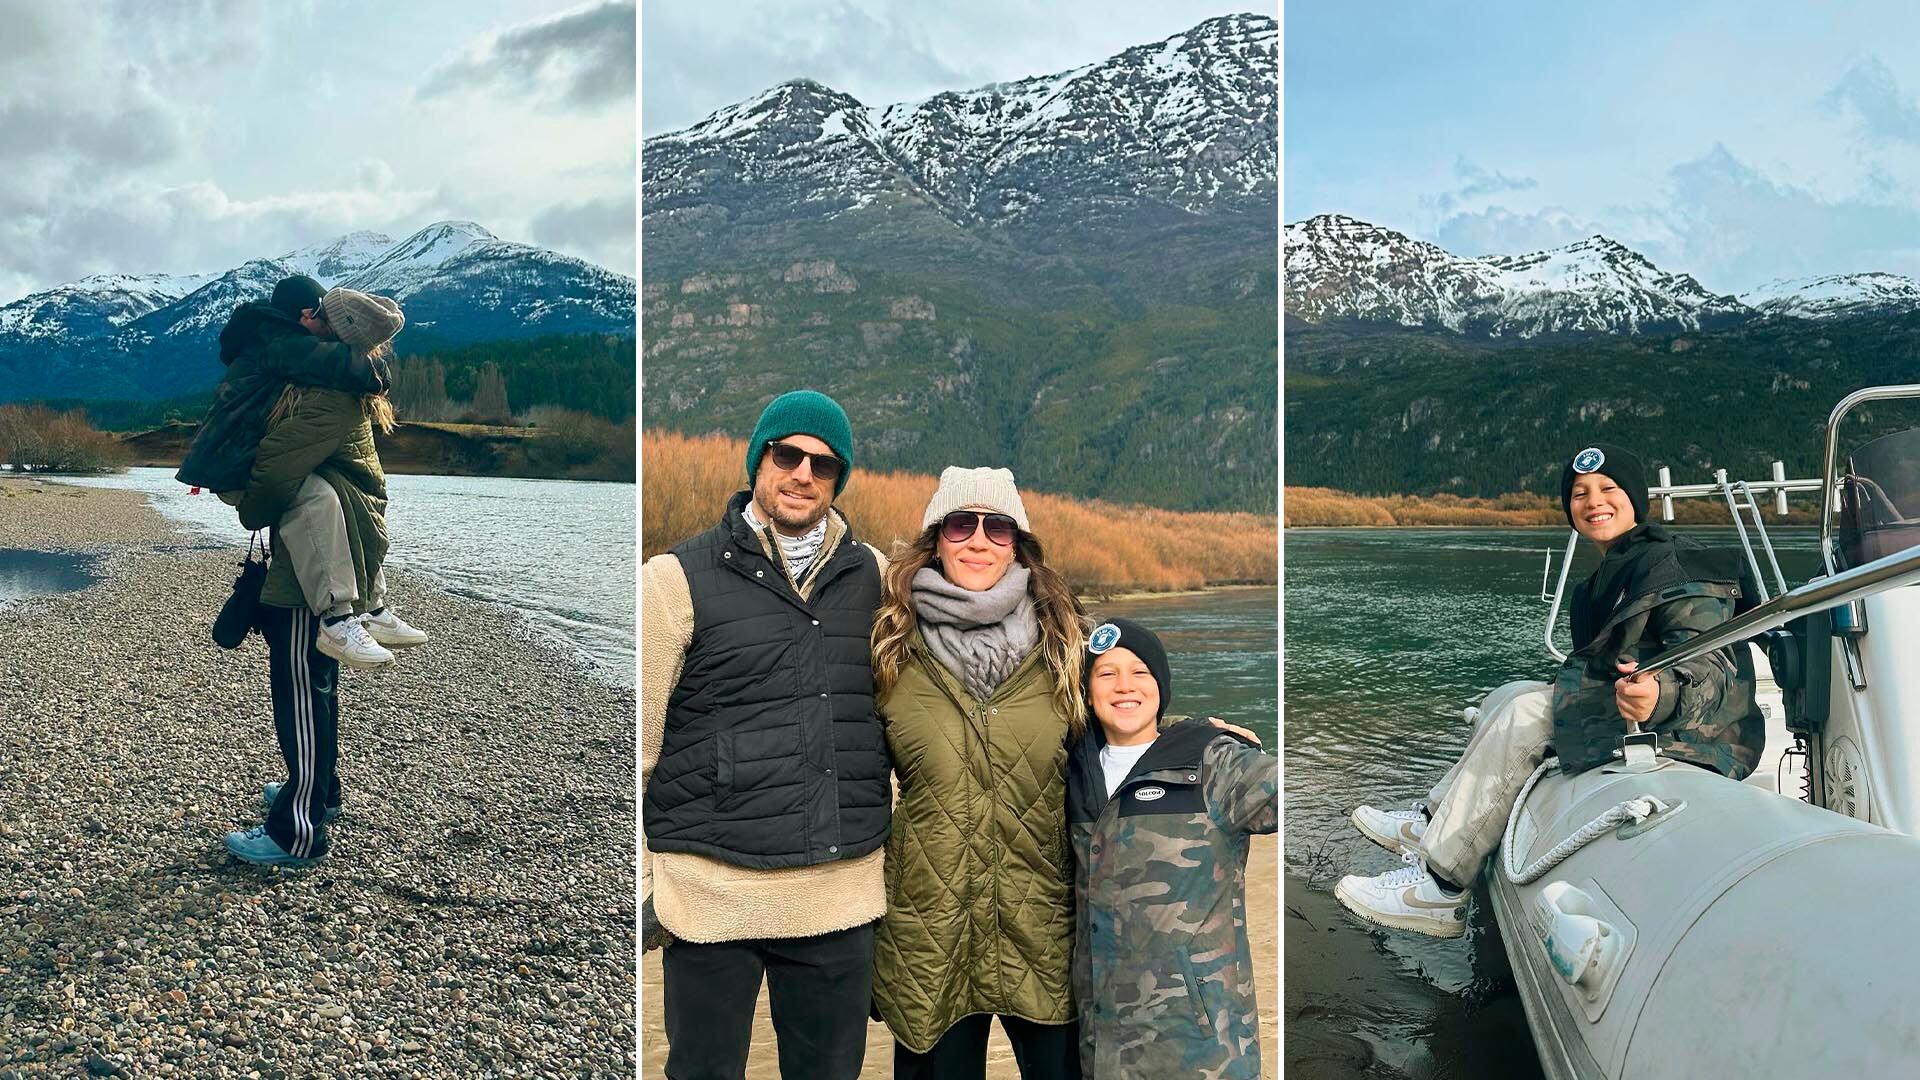 La travesía invernal de Jimena Barón junto a su familia en la Patagonia: “Parece de película”